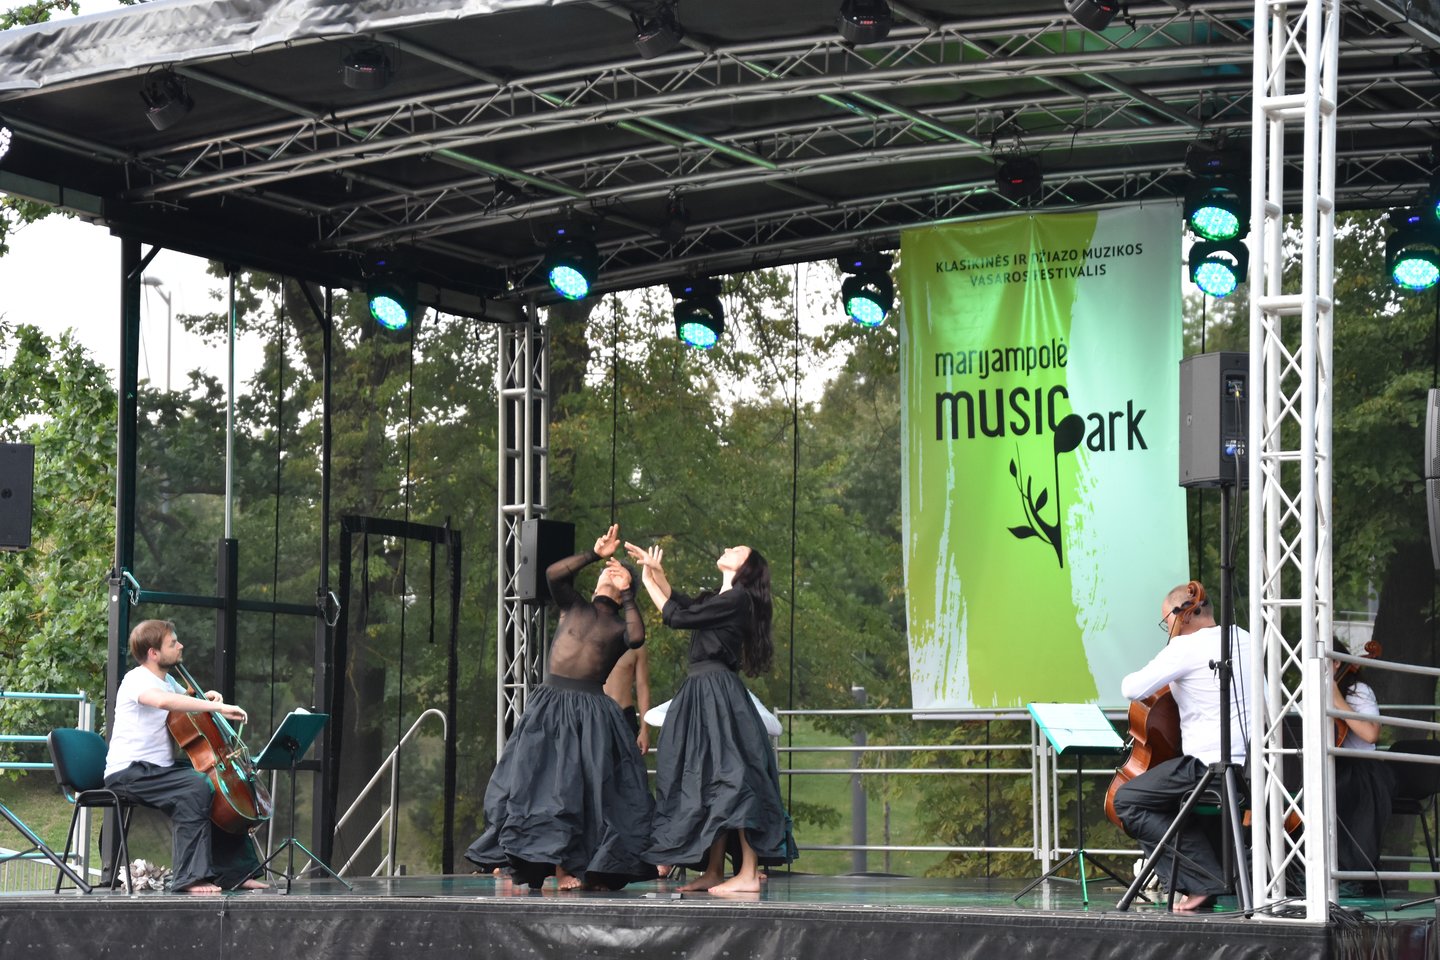  Festivalis „Marijampolės Music Park“.<br> Organizatorių nuotr.